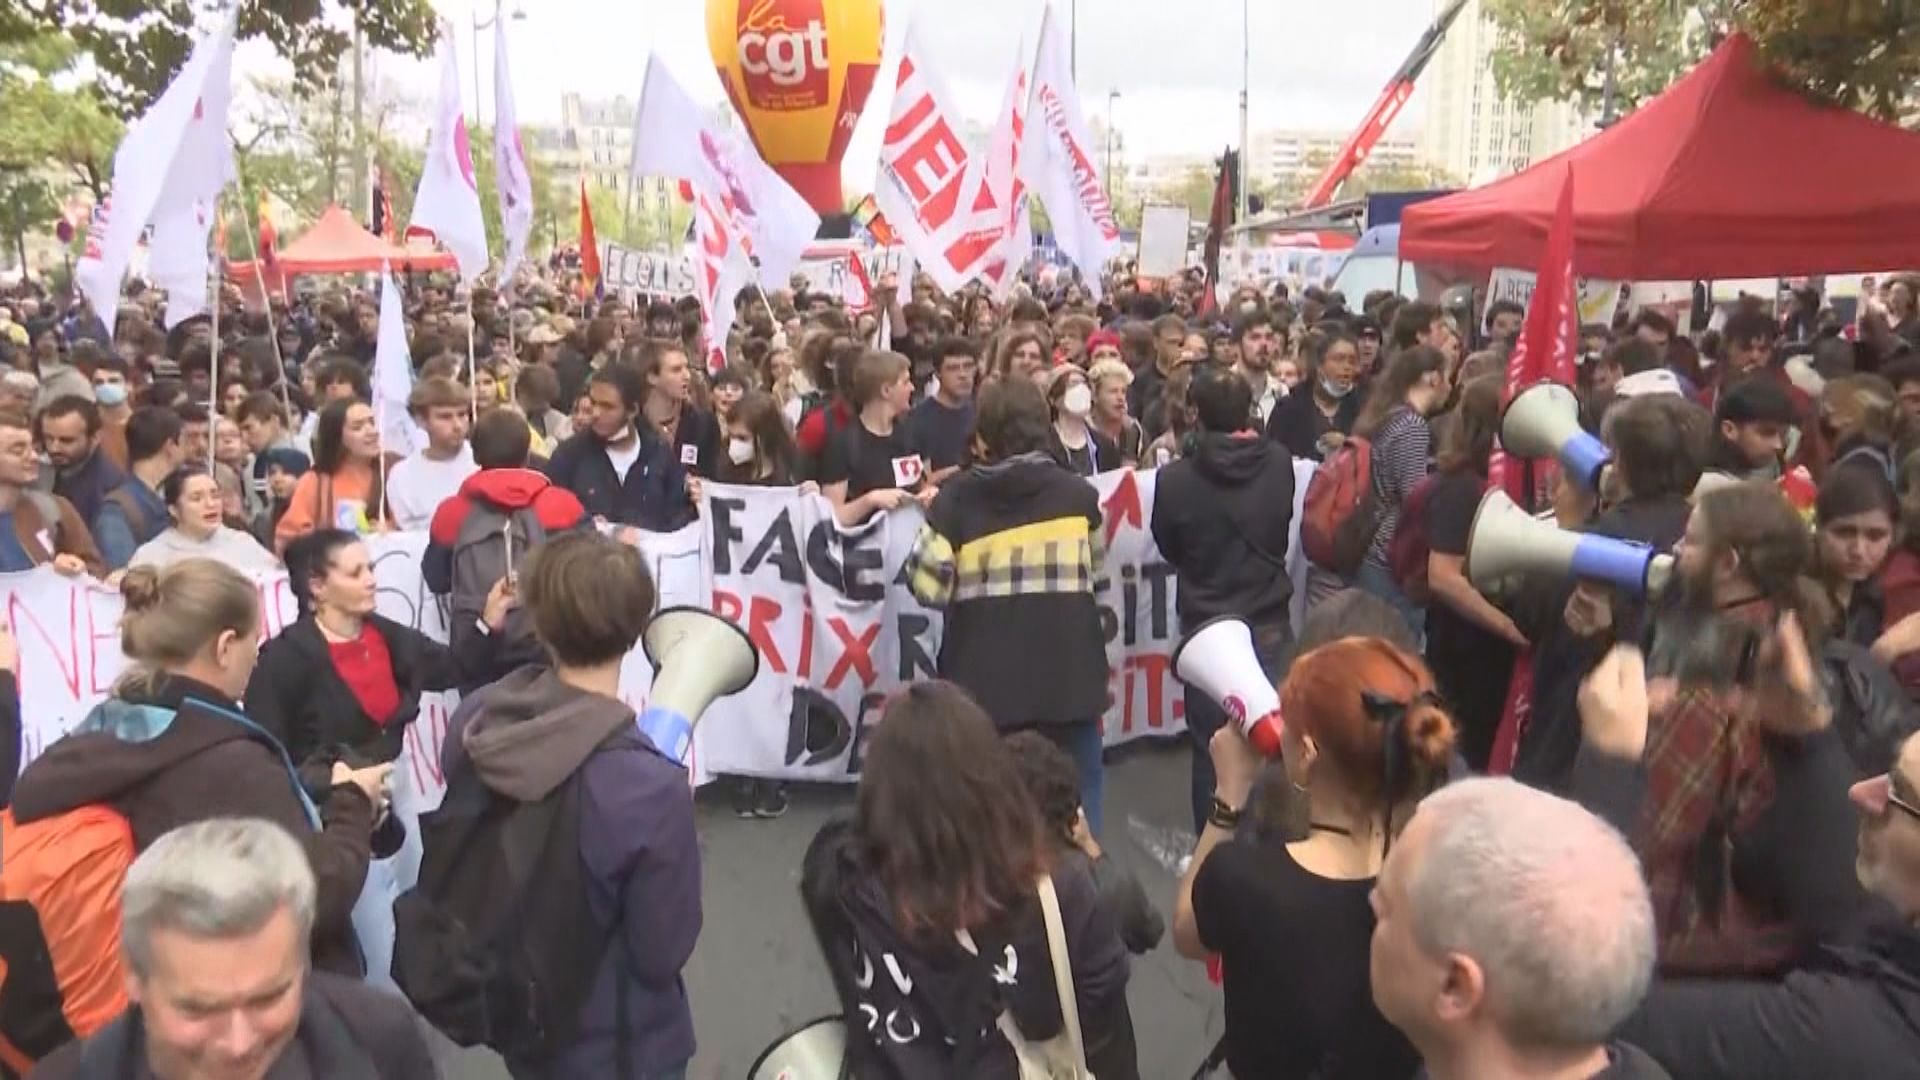 法國多個工會發起全國罷工爭取加薪